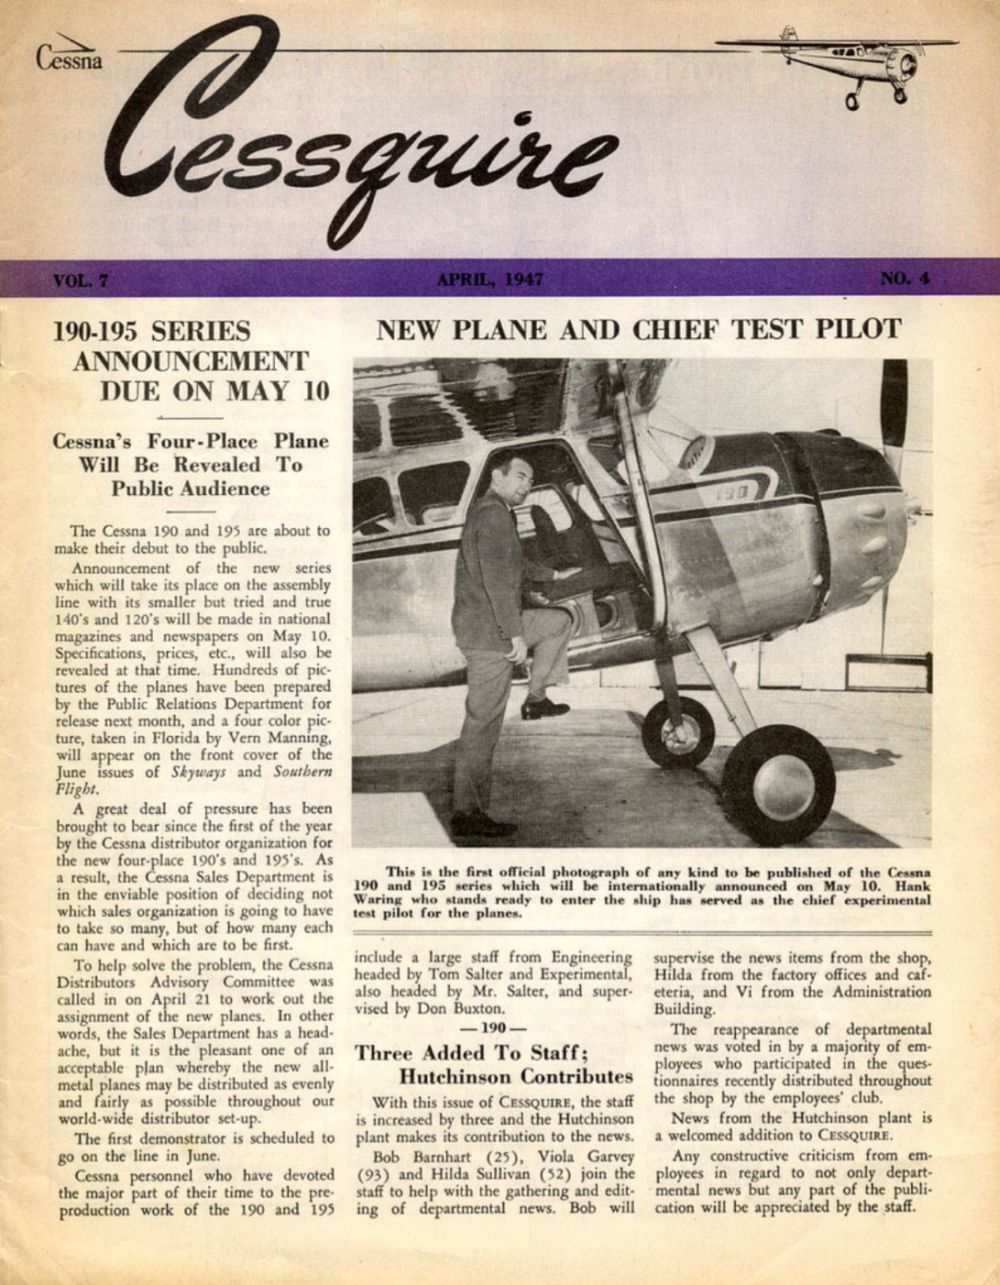 Článek ve firemním časopise Cessquire v dubnu 1947 informoval o veřejném oznámení série 190 – 195 v tisku. Na fotografii je Mort Brown, který byl v té době šéfem zkušebních pilotů